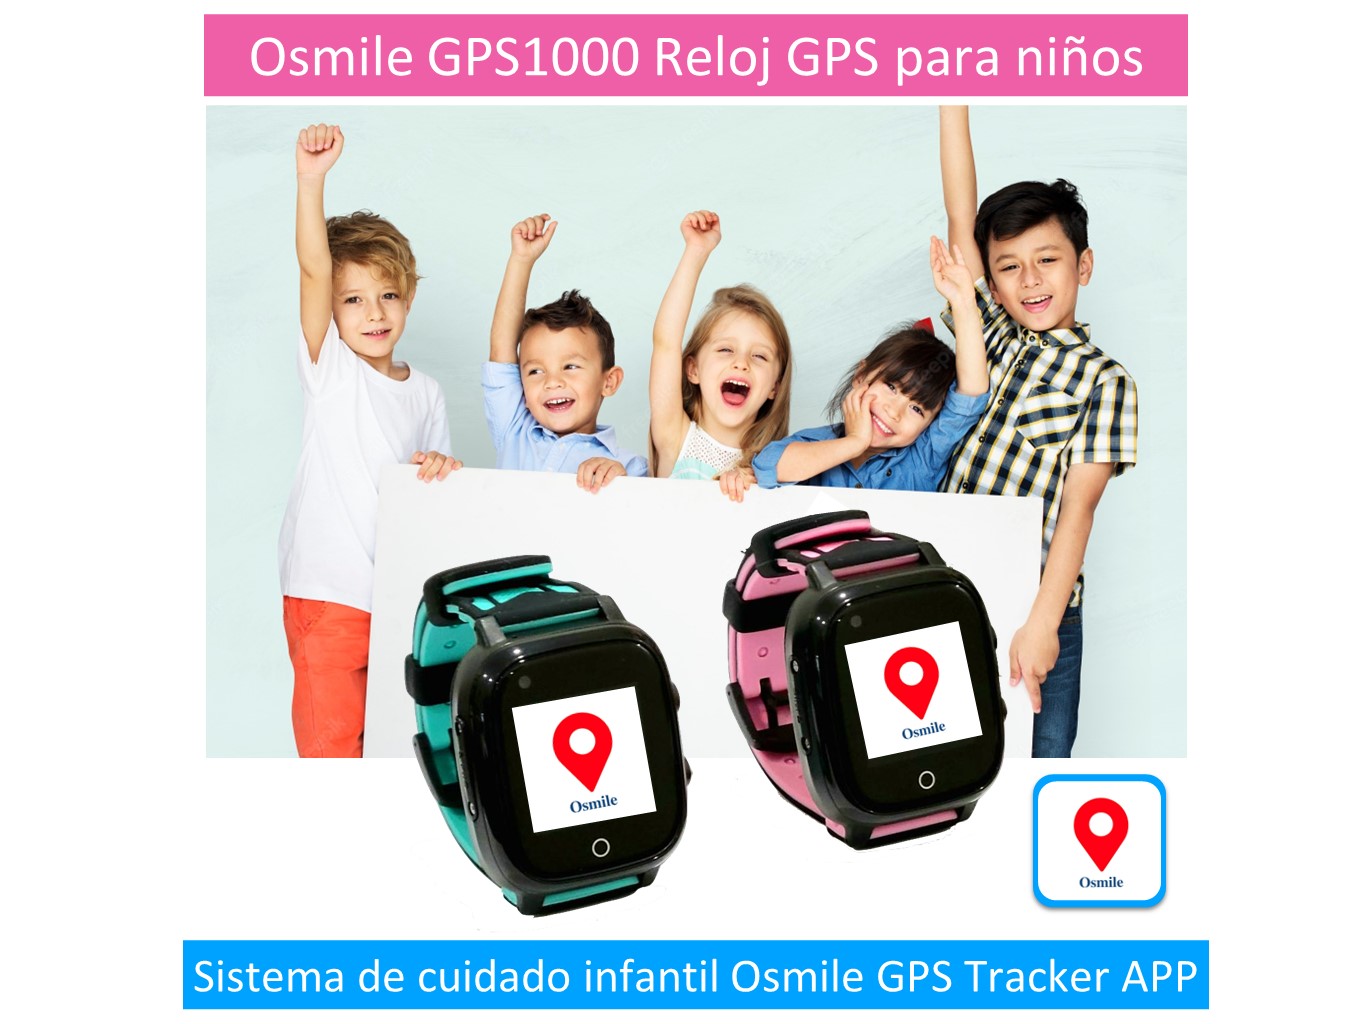 Osmile GPS1000 - Reloj GPS para niños - JC